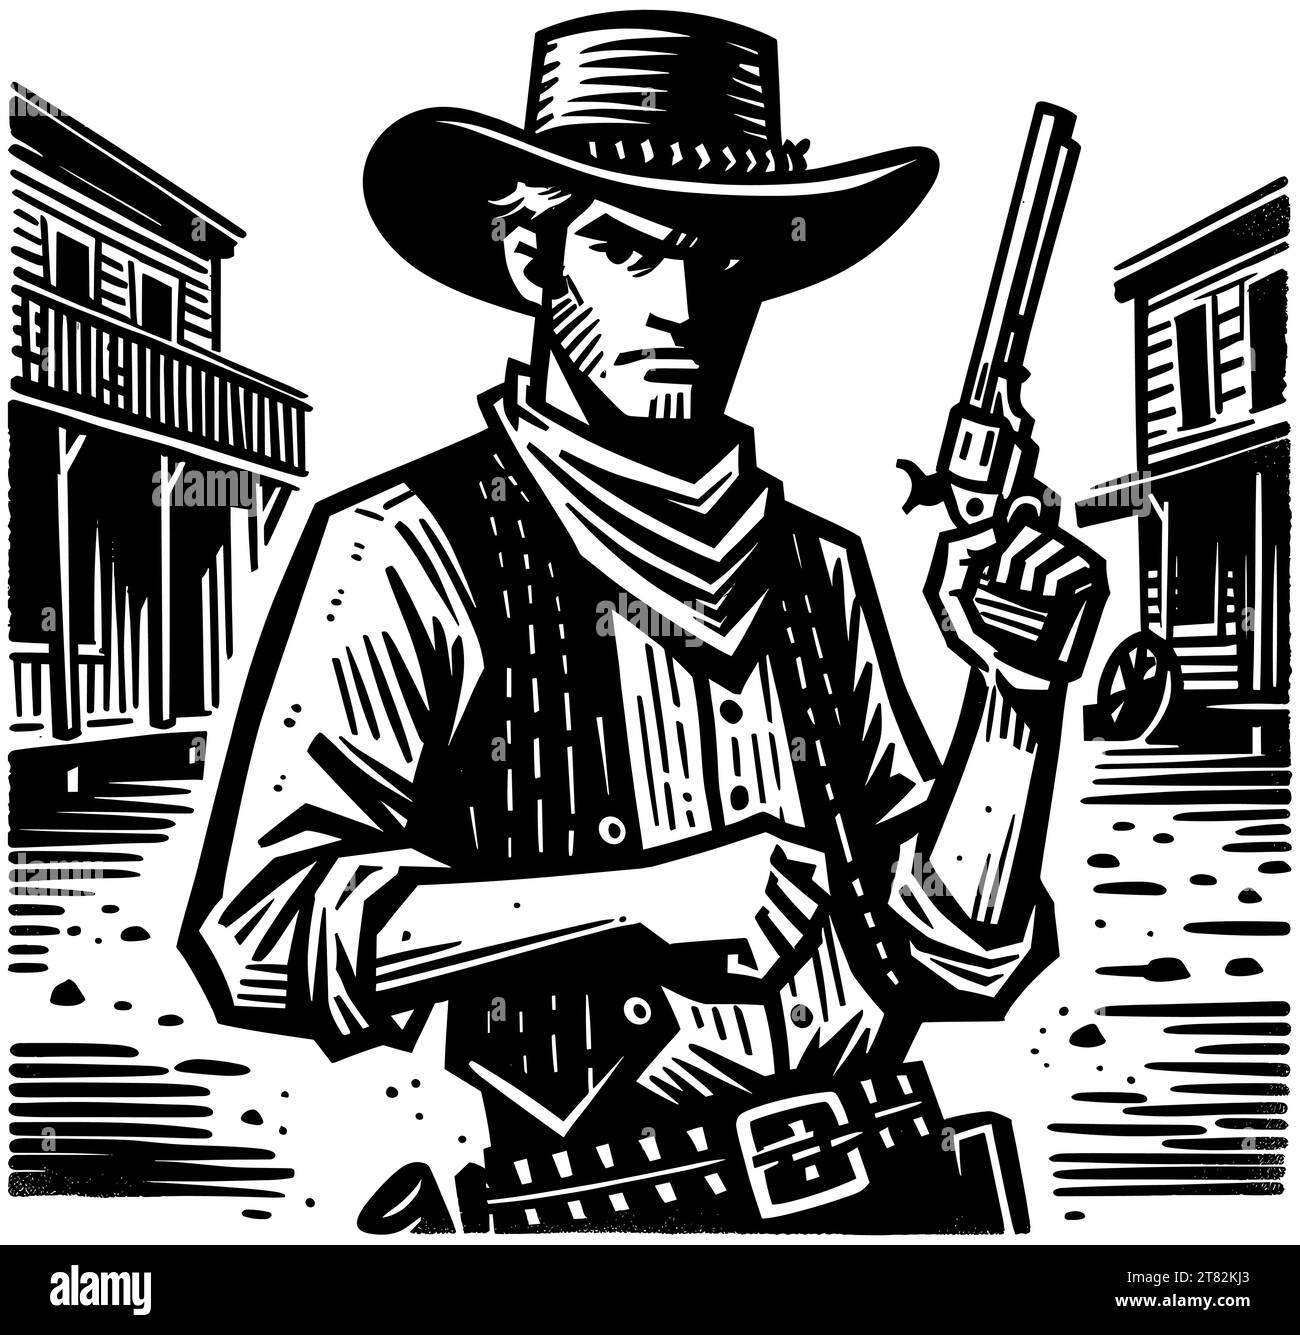 Cowboy mit Revolver steht in der alten Westernstadt im Holzschnitt-Stil. Stock Vektor